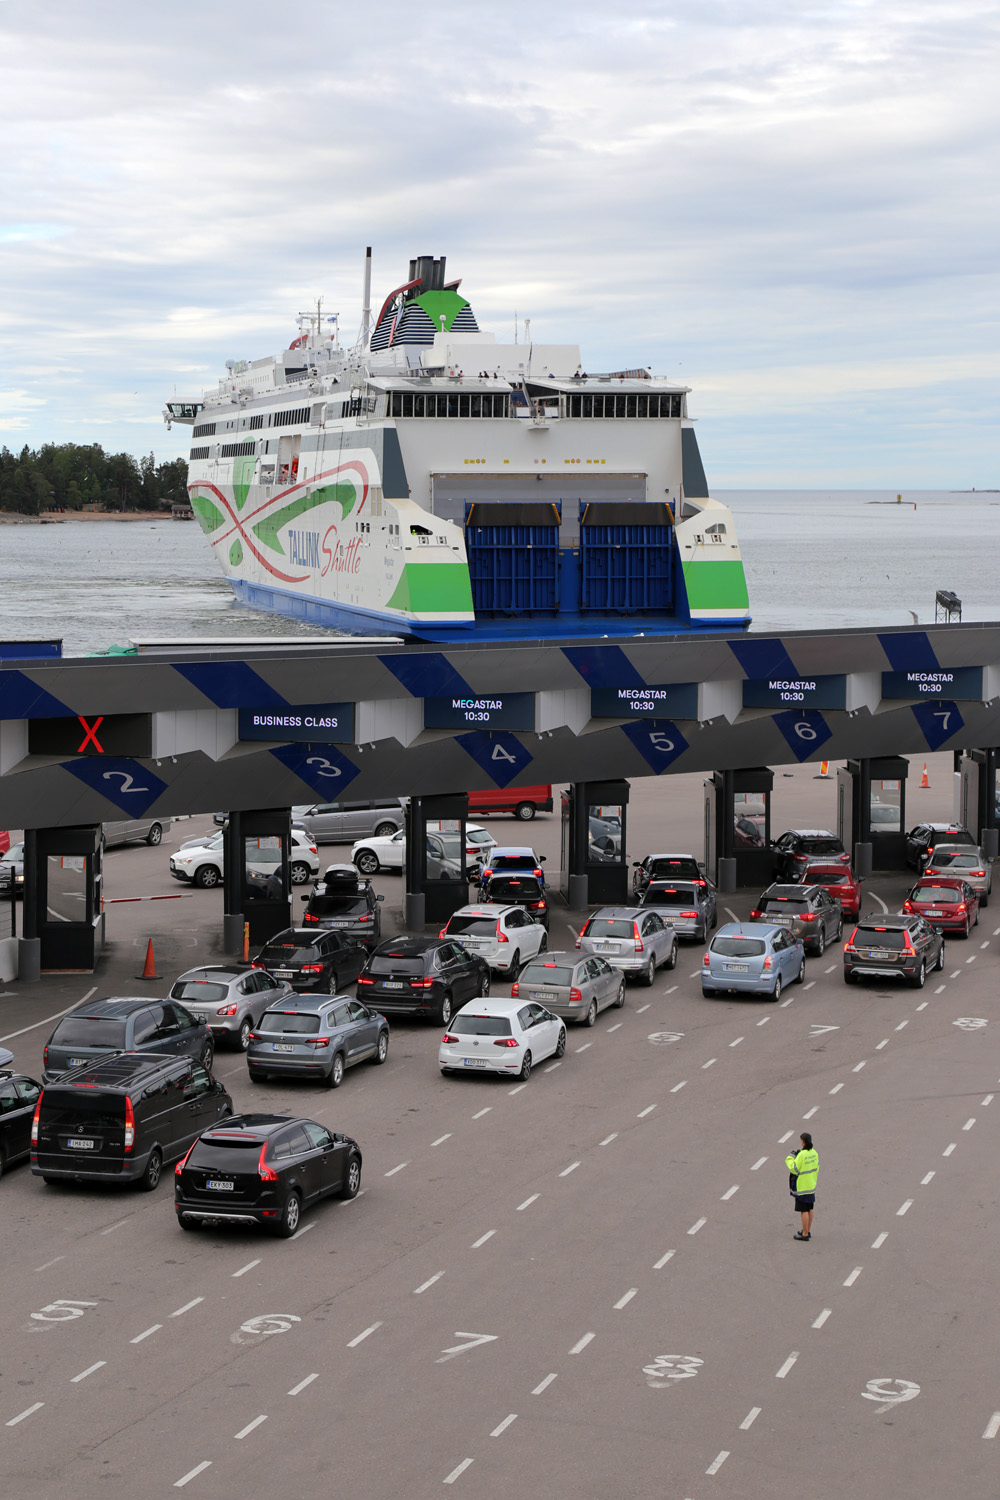 bill-hocker-helsinki-tallinn-ferry-helsinki-finland-2019